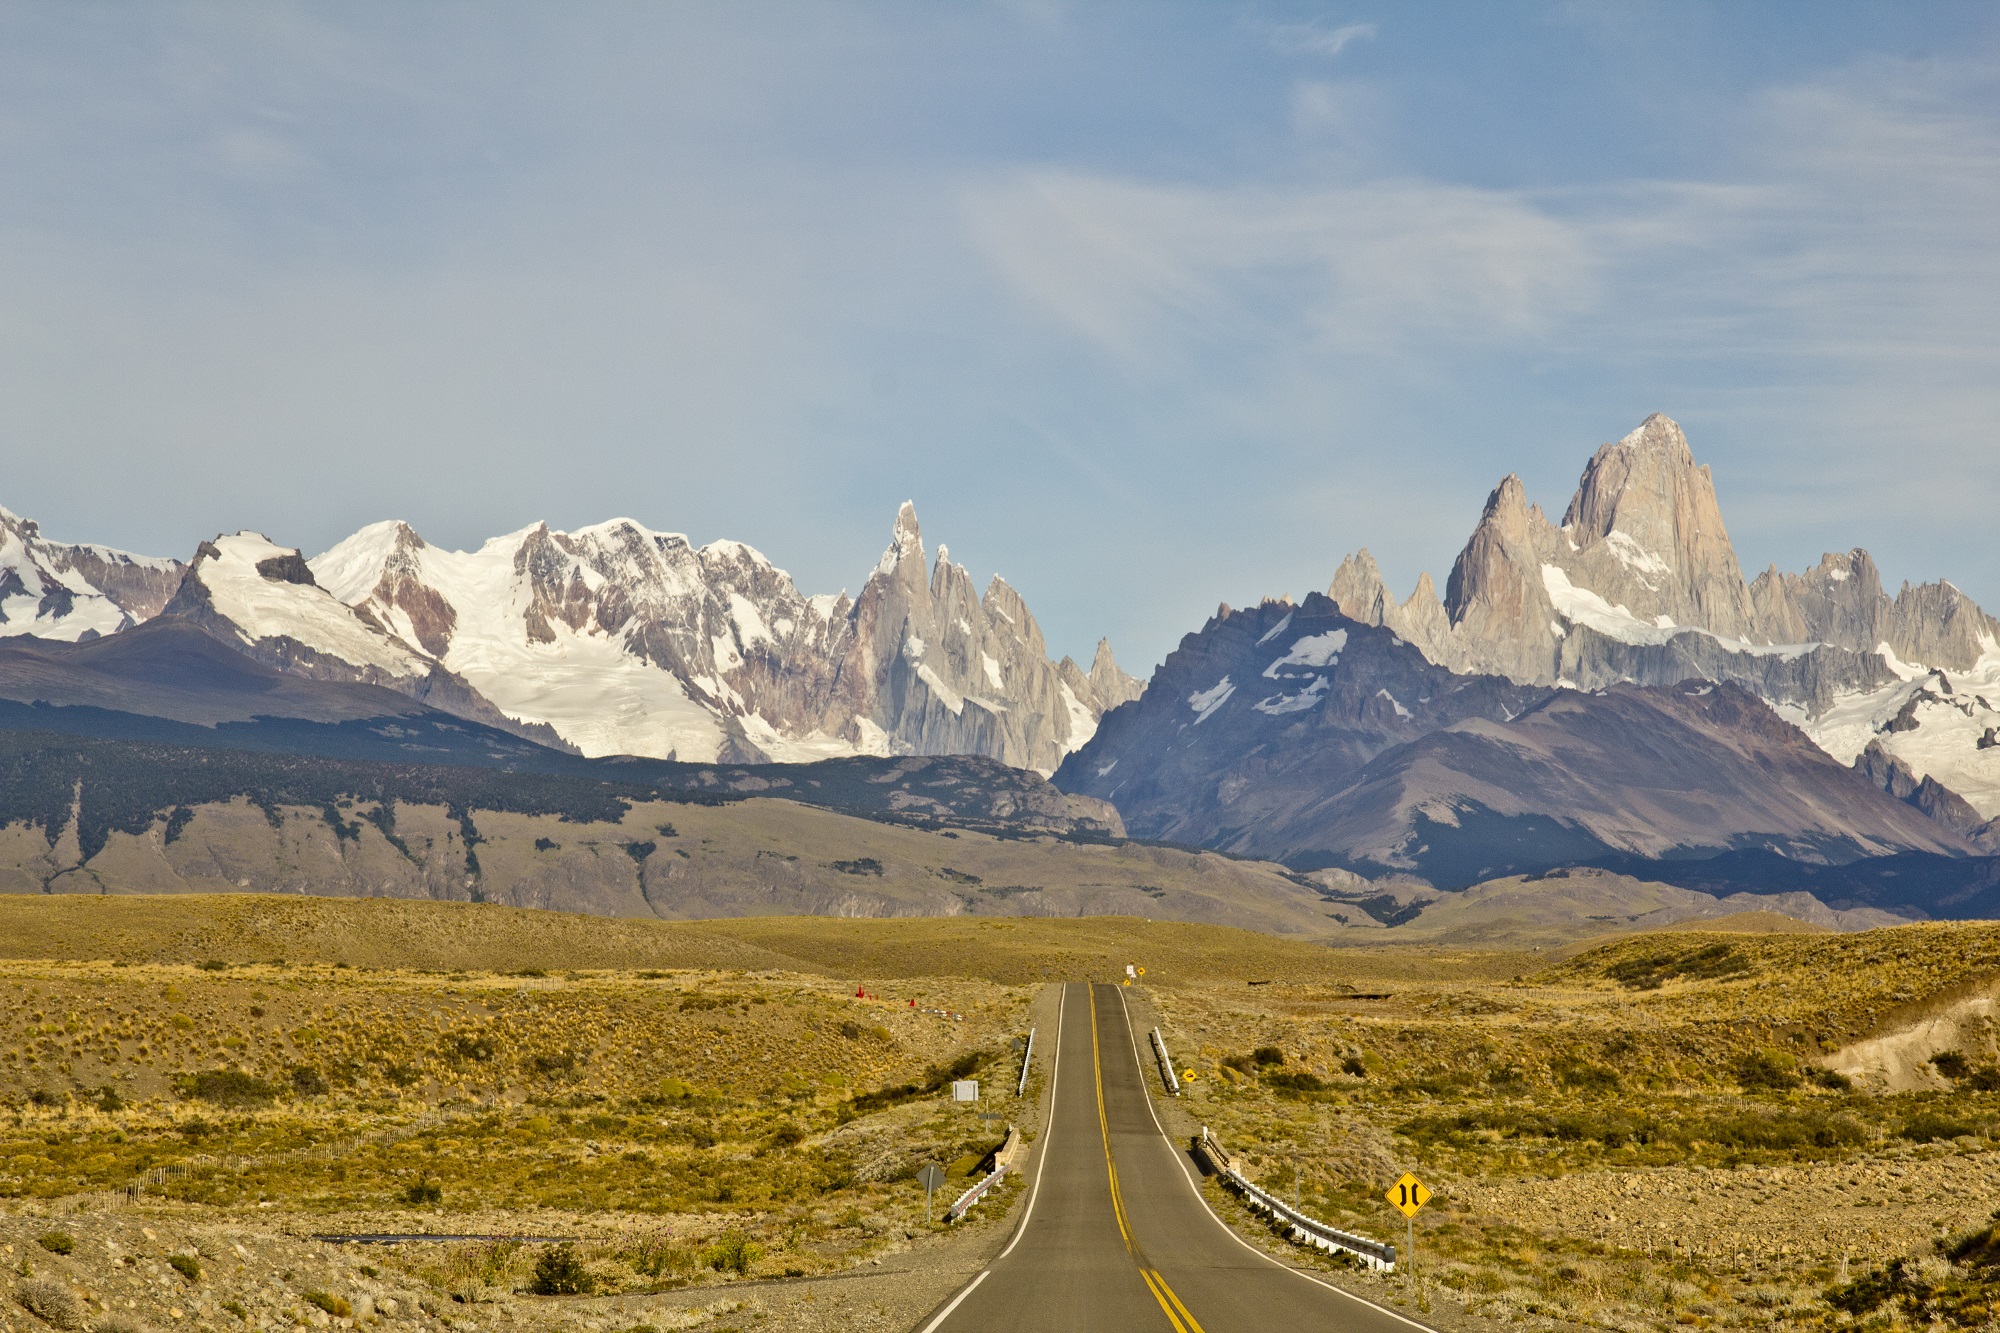 voyage en patagonie